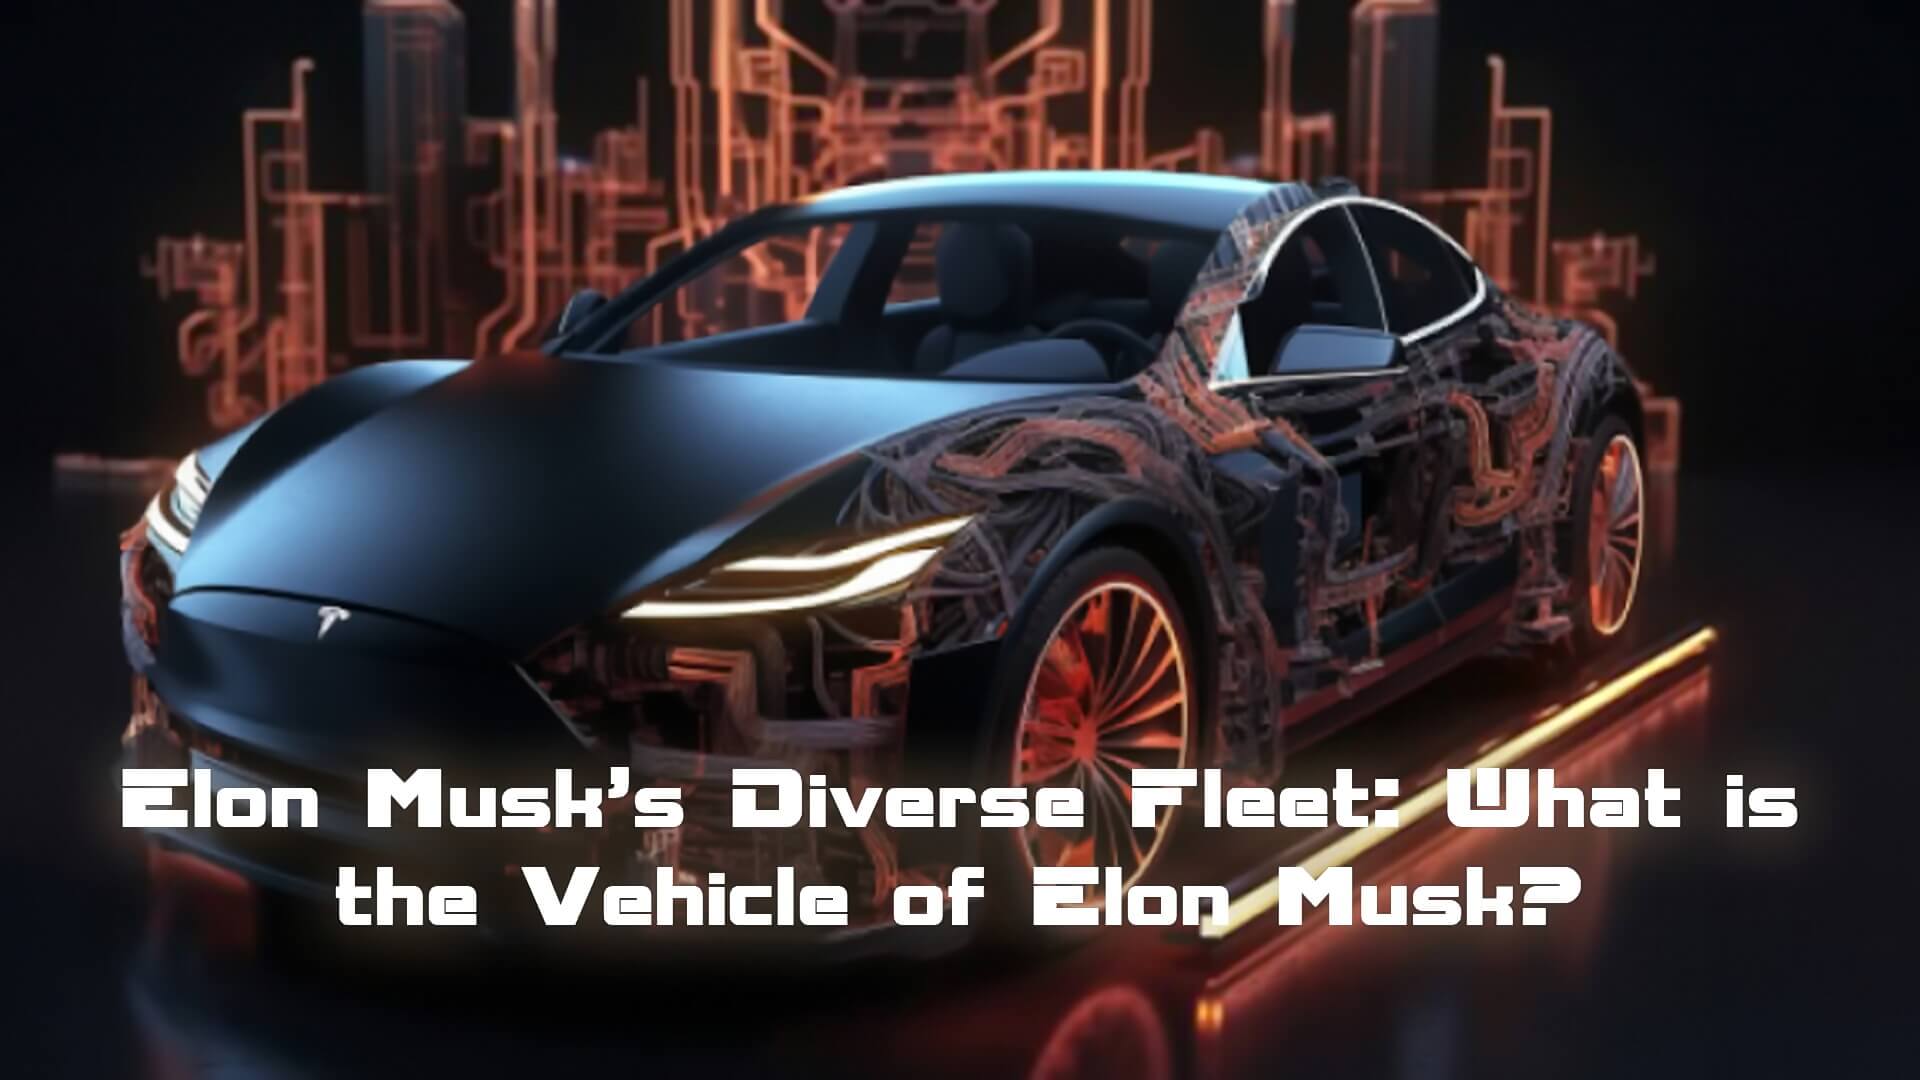 Elon Musk’s Diverse Fleet: What is the Vehicle of Elon Musk?